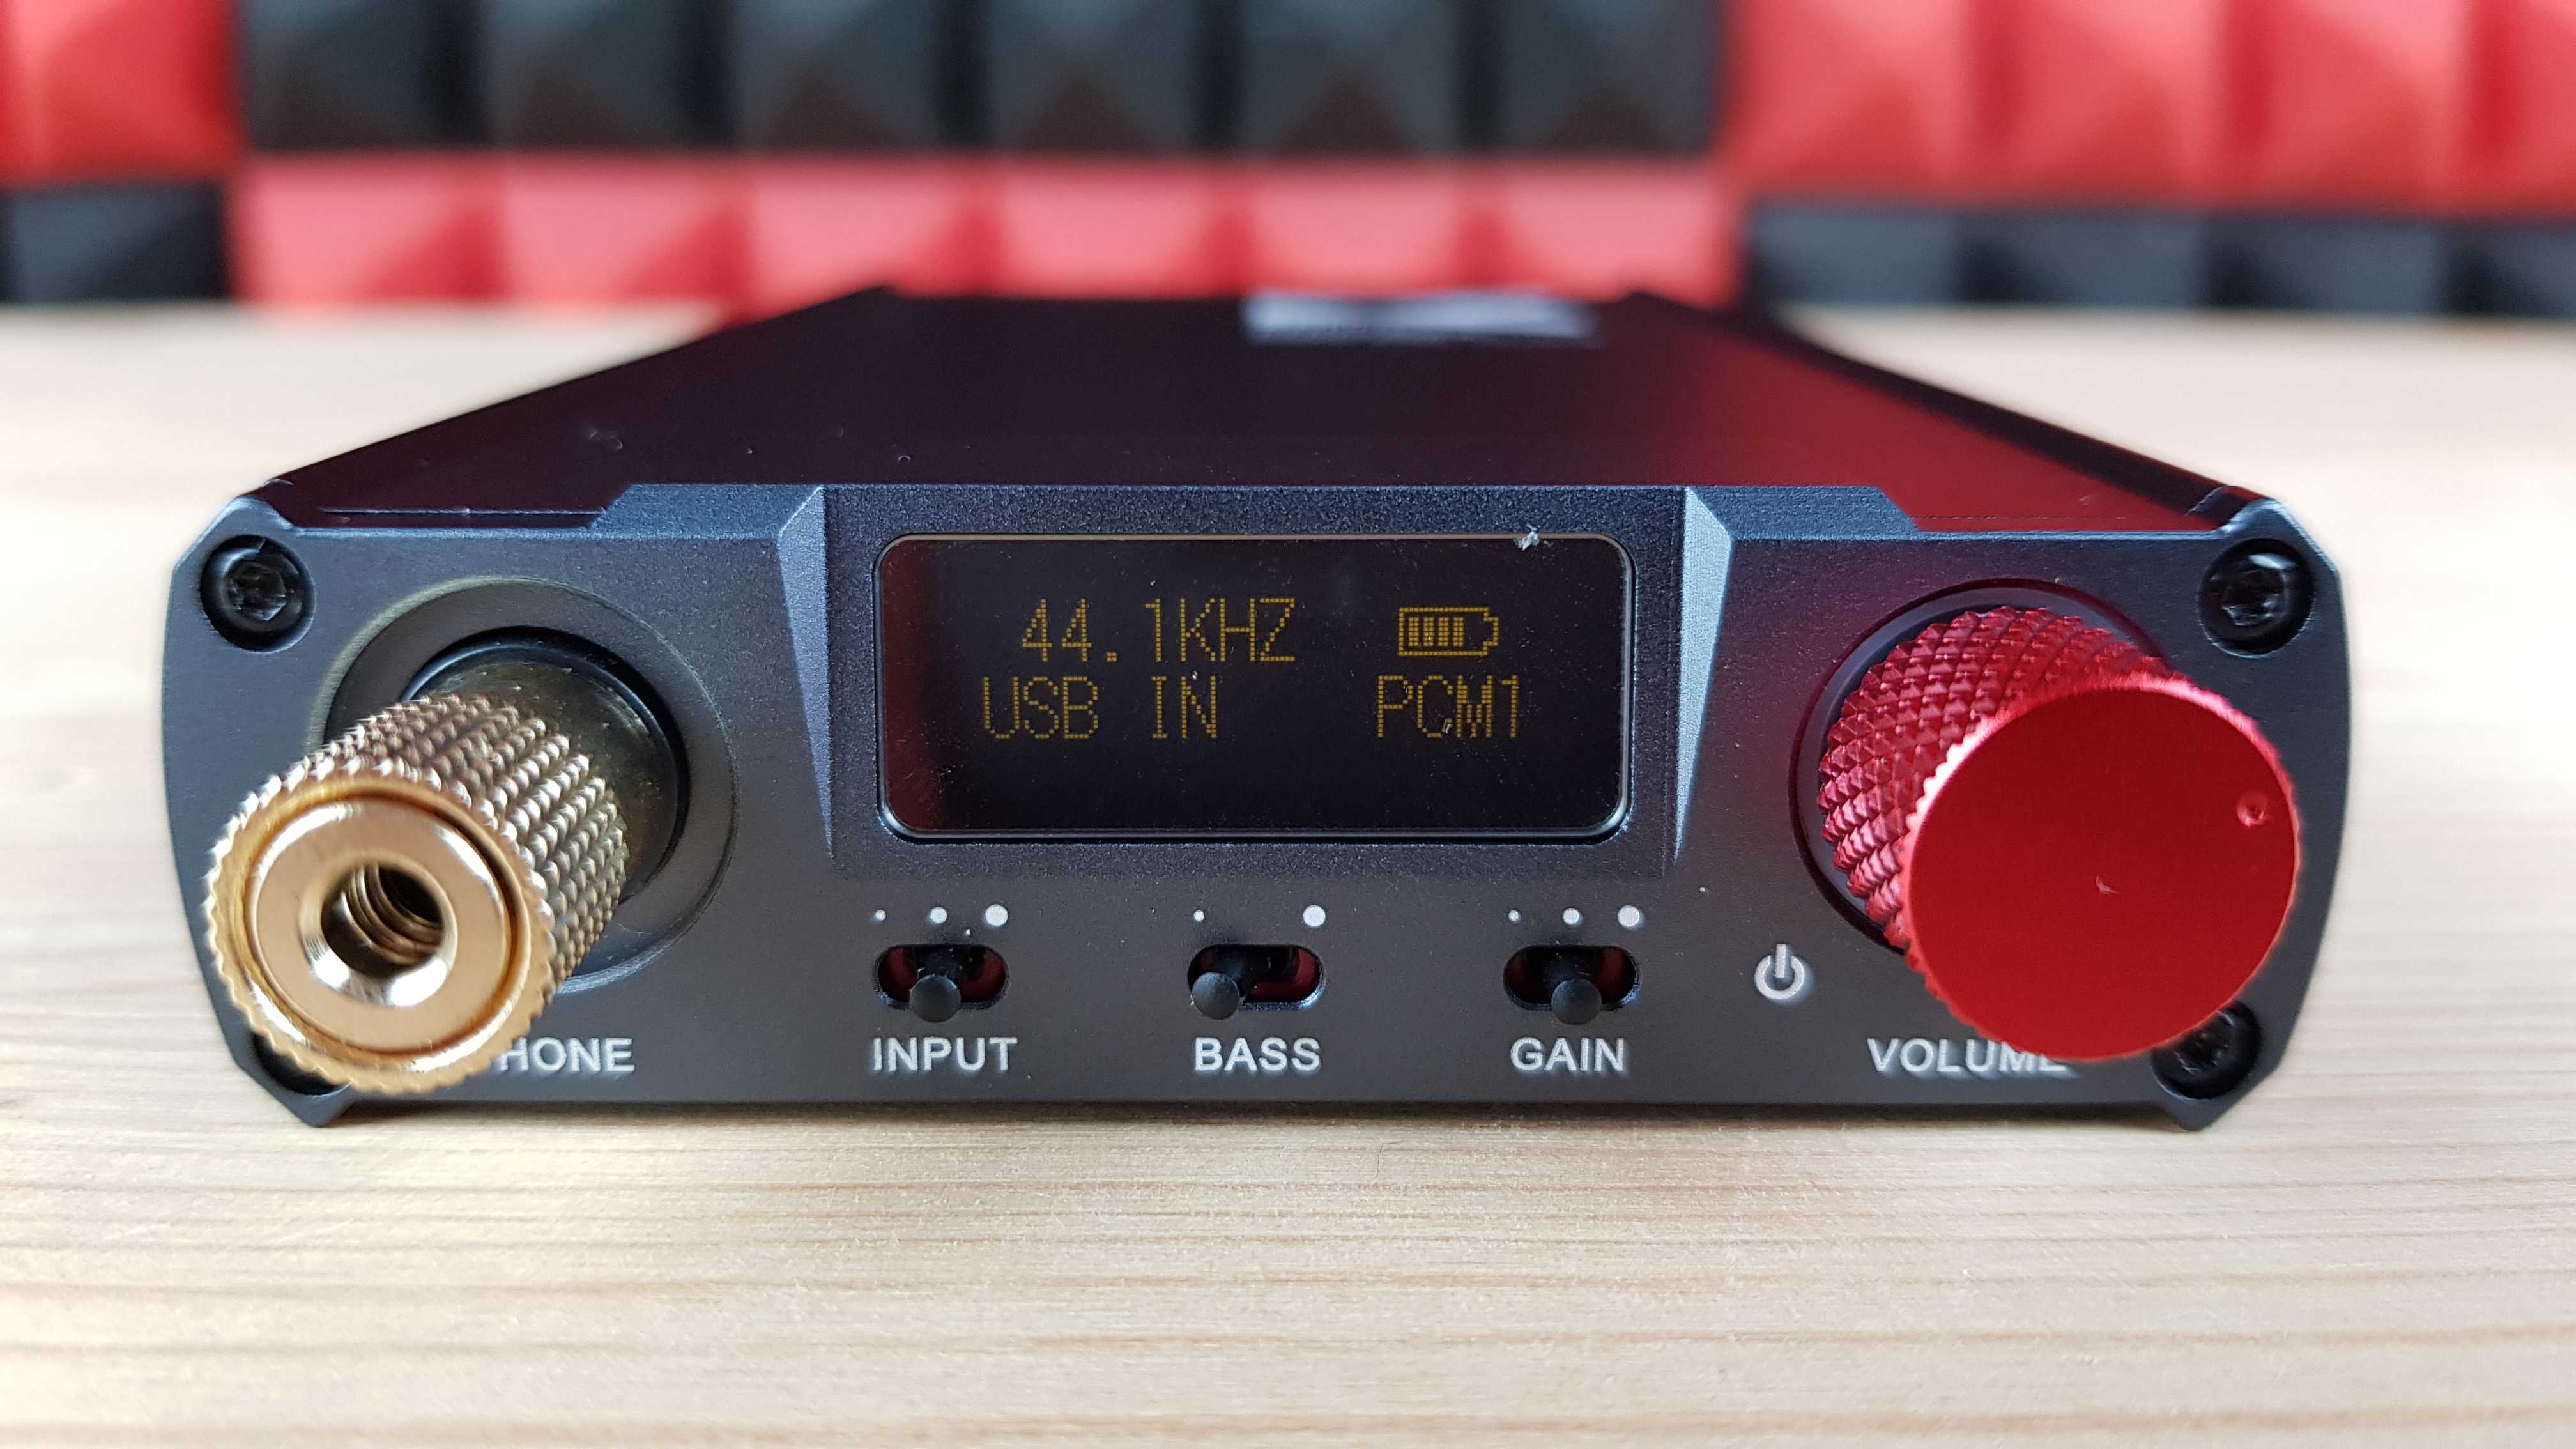 Fx audio dac x6 обзор отзыв сравнение с breeze audio es9018k2m и m audio fast track ultra замер ачх